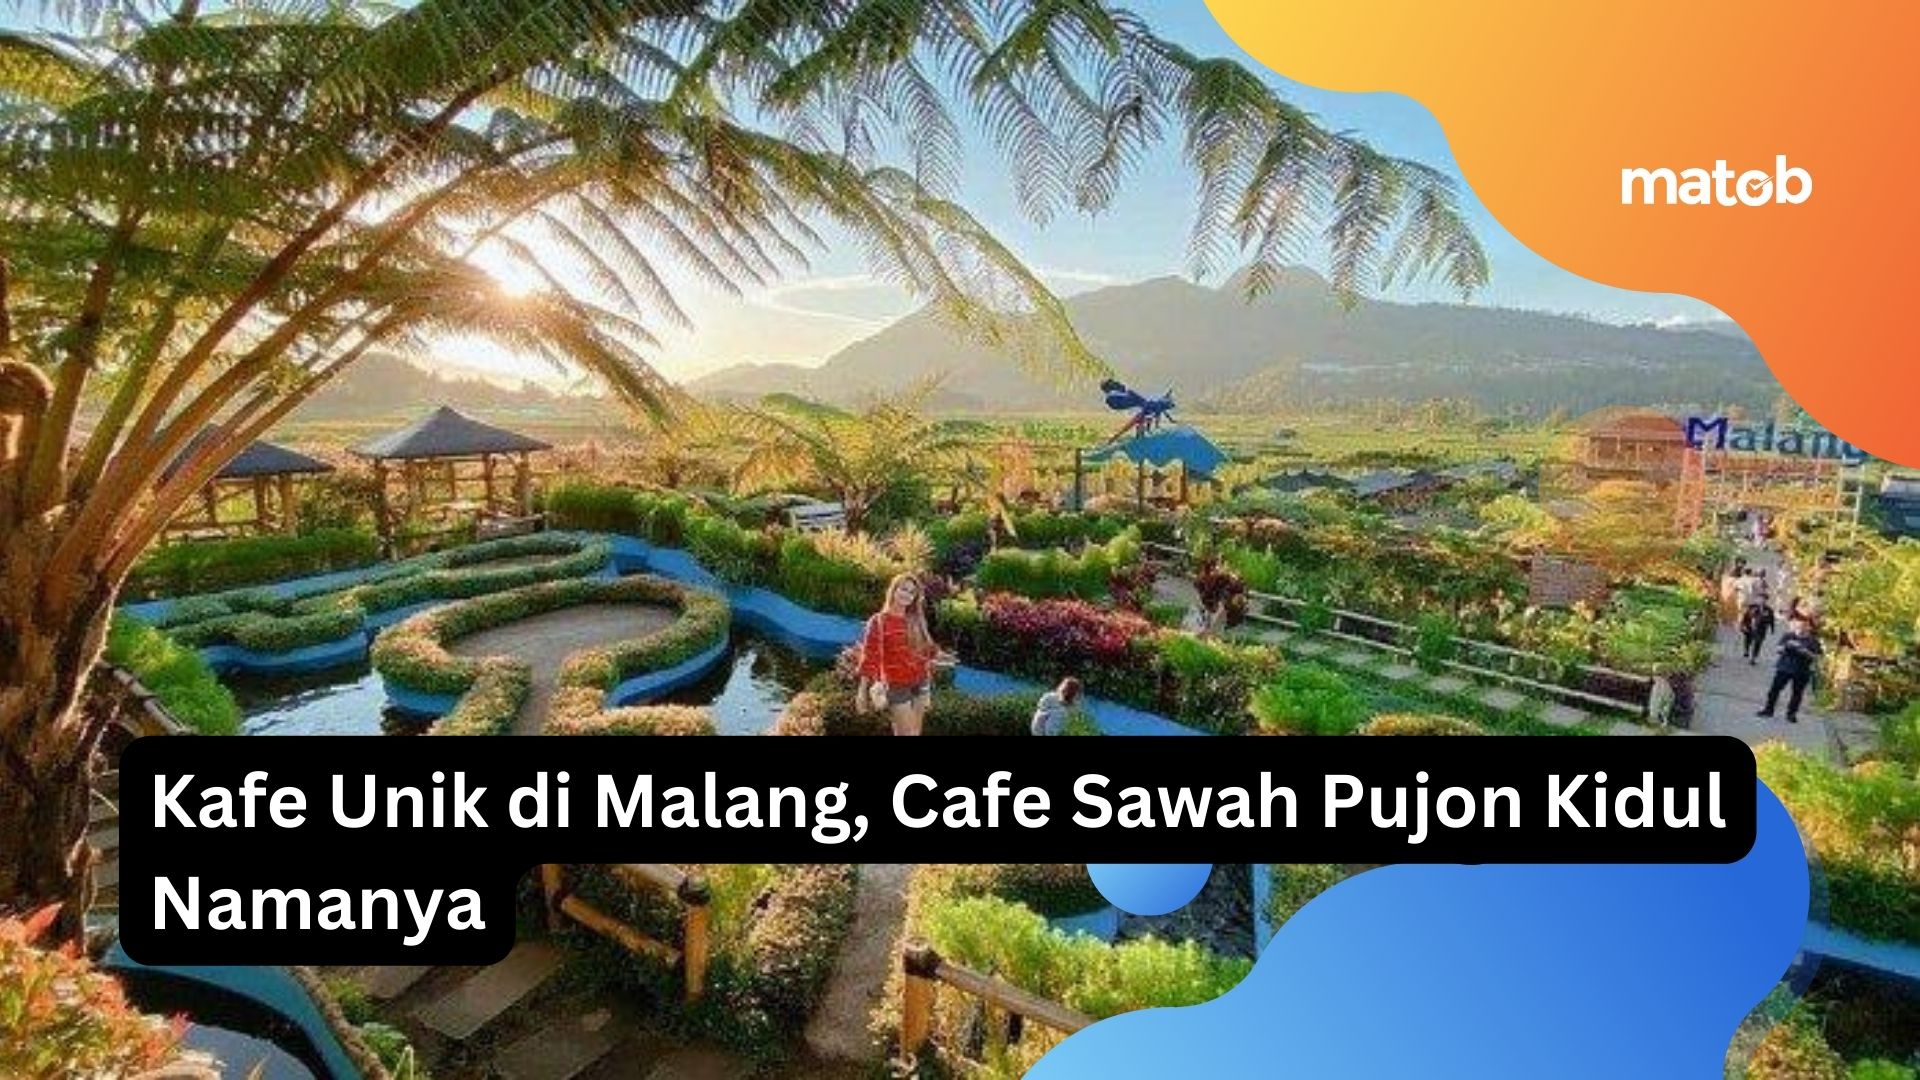 Kafe Unik di Malang, Cafe Sawah Pujon Kidul Namanya